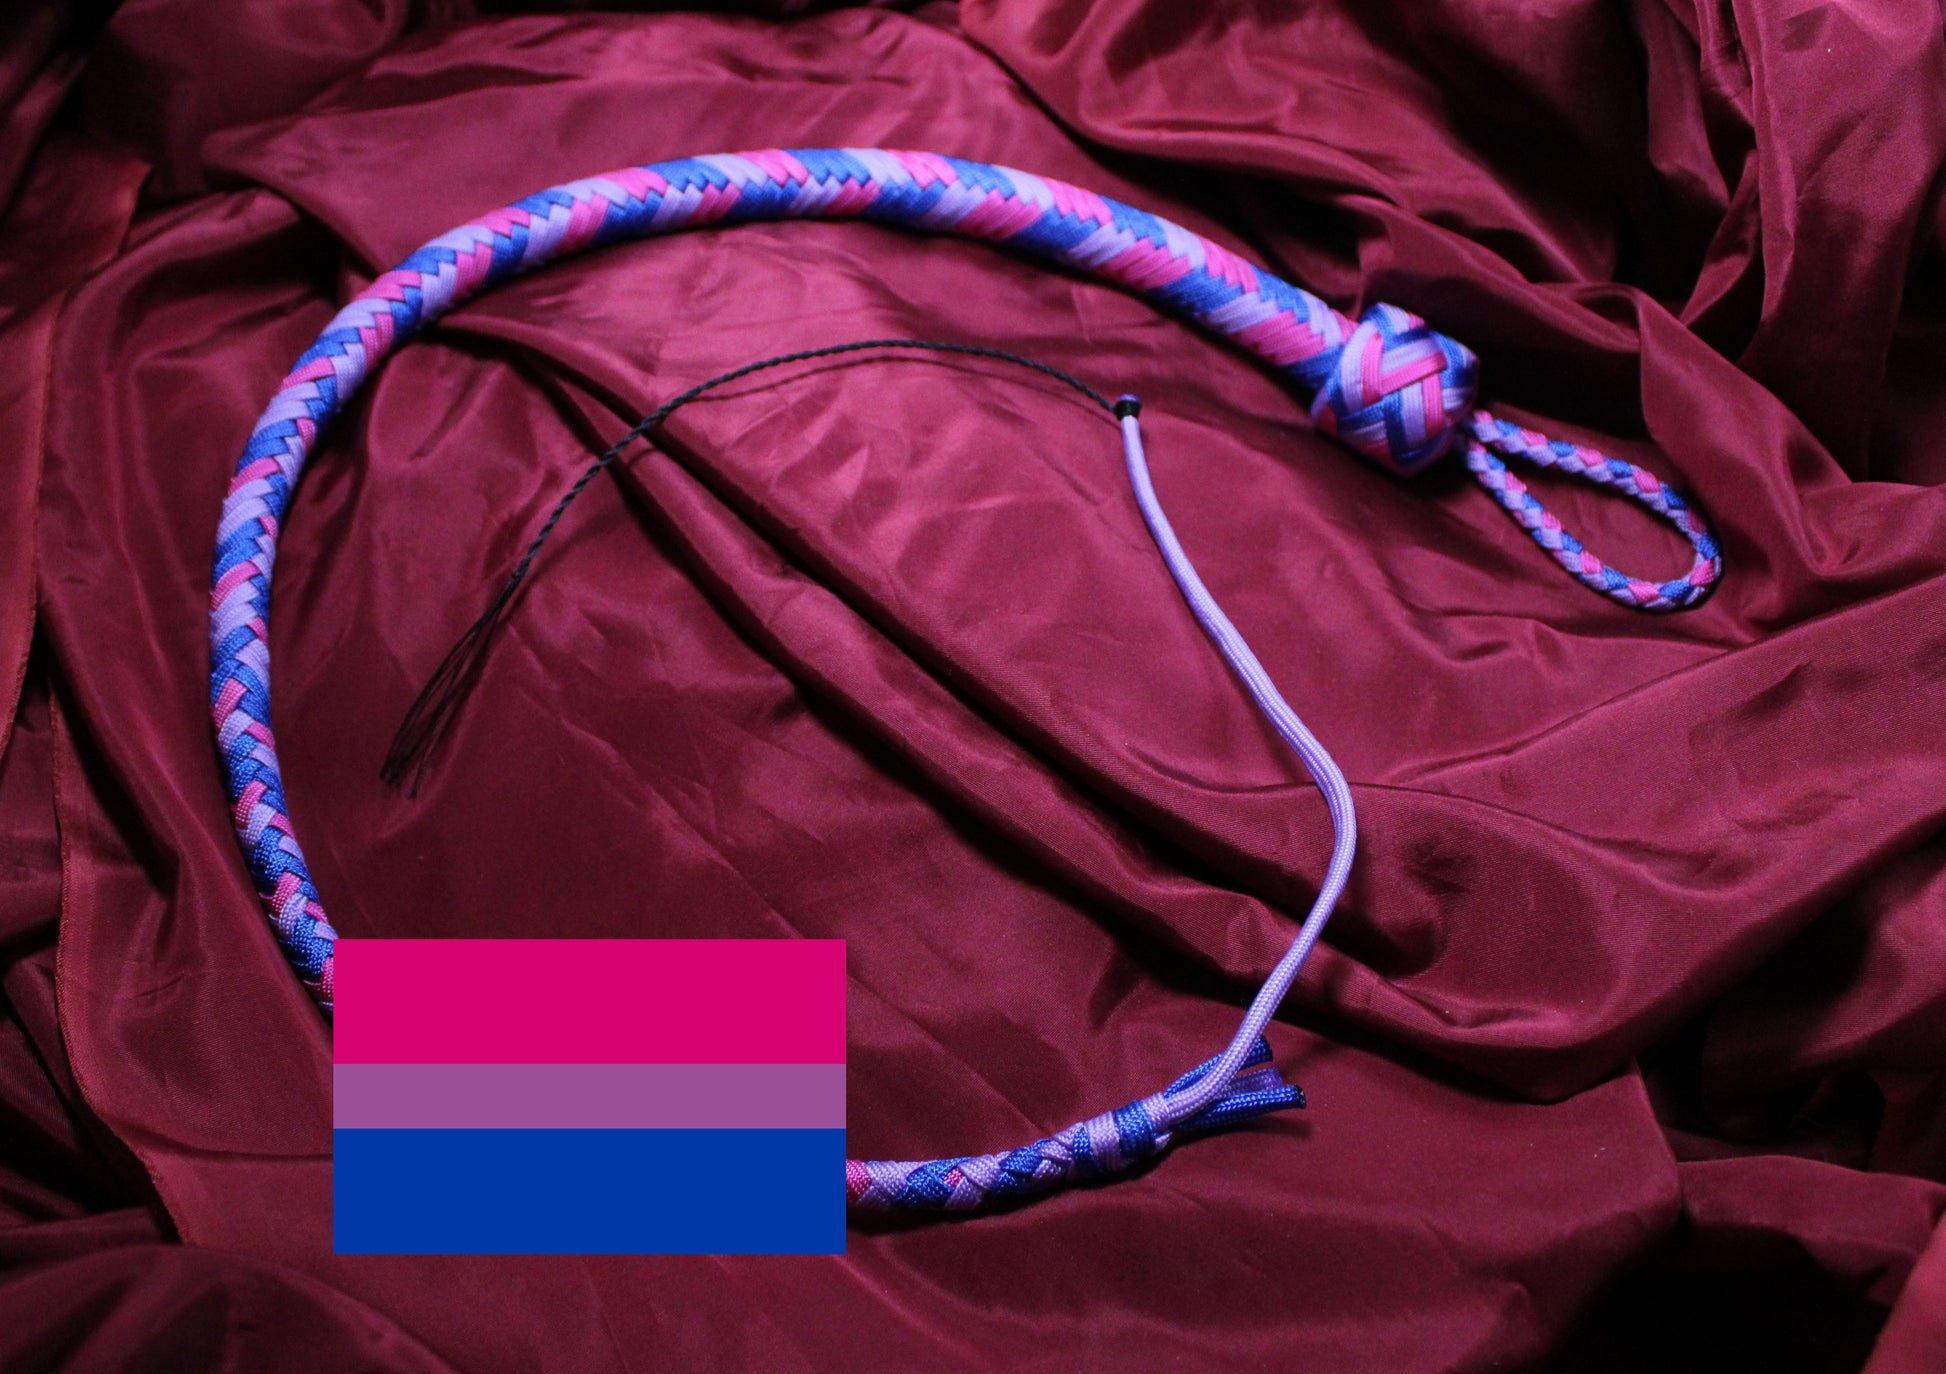 fouet en paracorde aux couleurs du drapeau bisexuel, le drapeau de fierté bisexuelle y est incrusté dans l'image